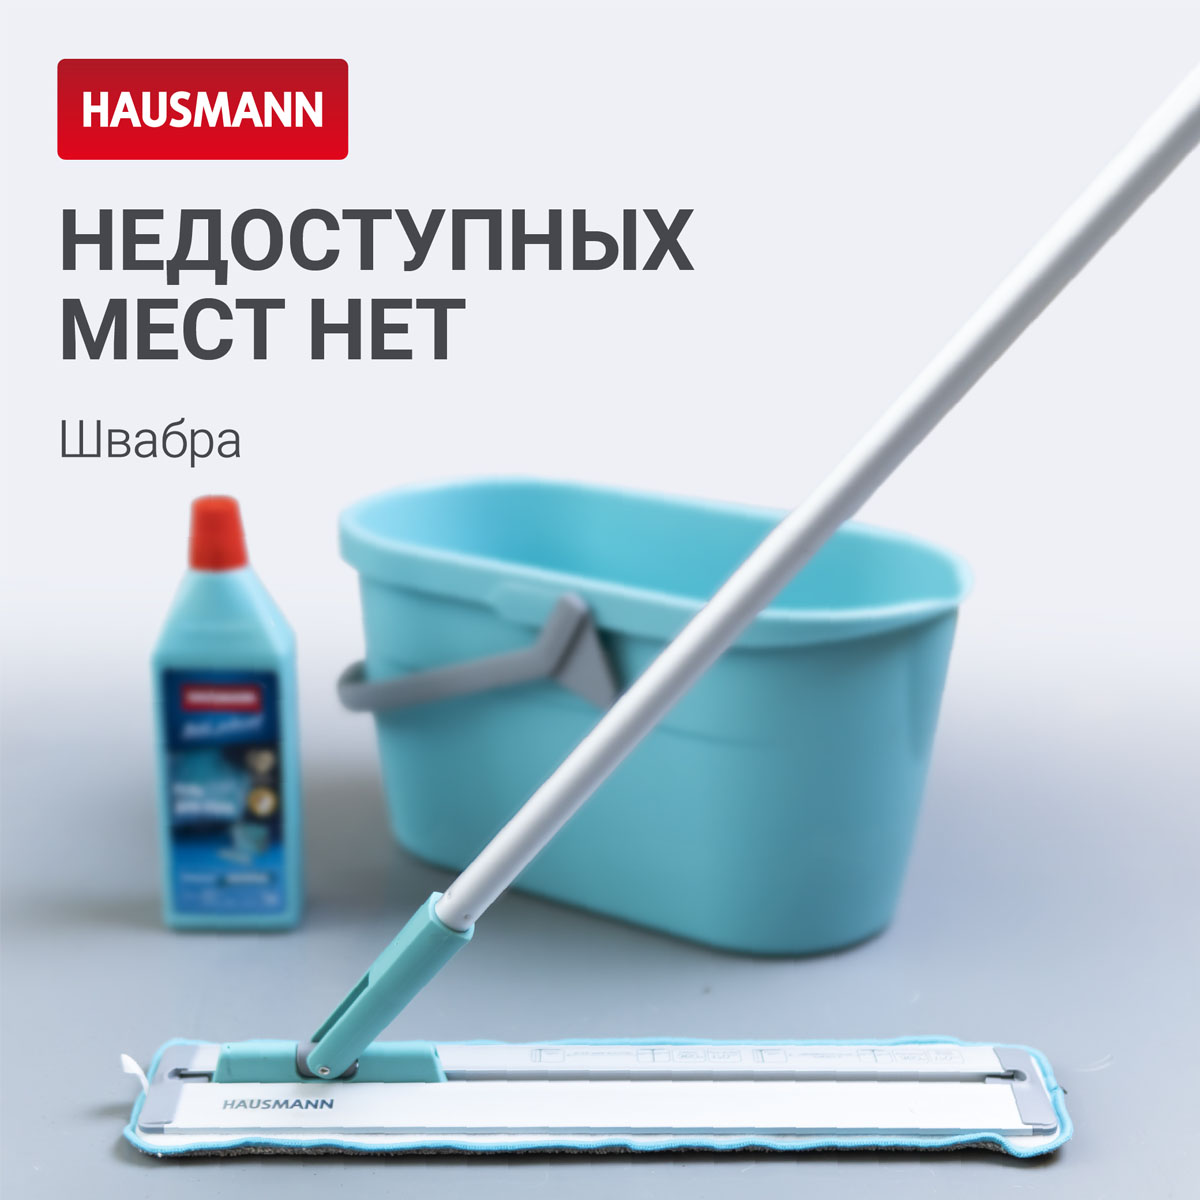 Швабра для влажной уборки Hausmann Cosmic Classic Home Slider с телескопической ручкой и слайд-механизмом швабра для наборов для уборки лайма